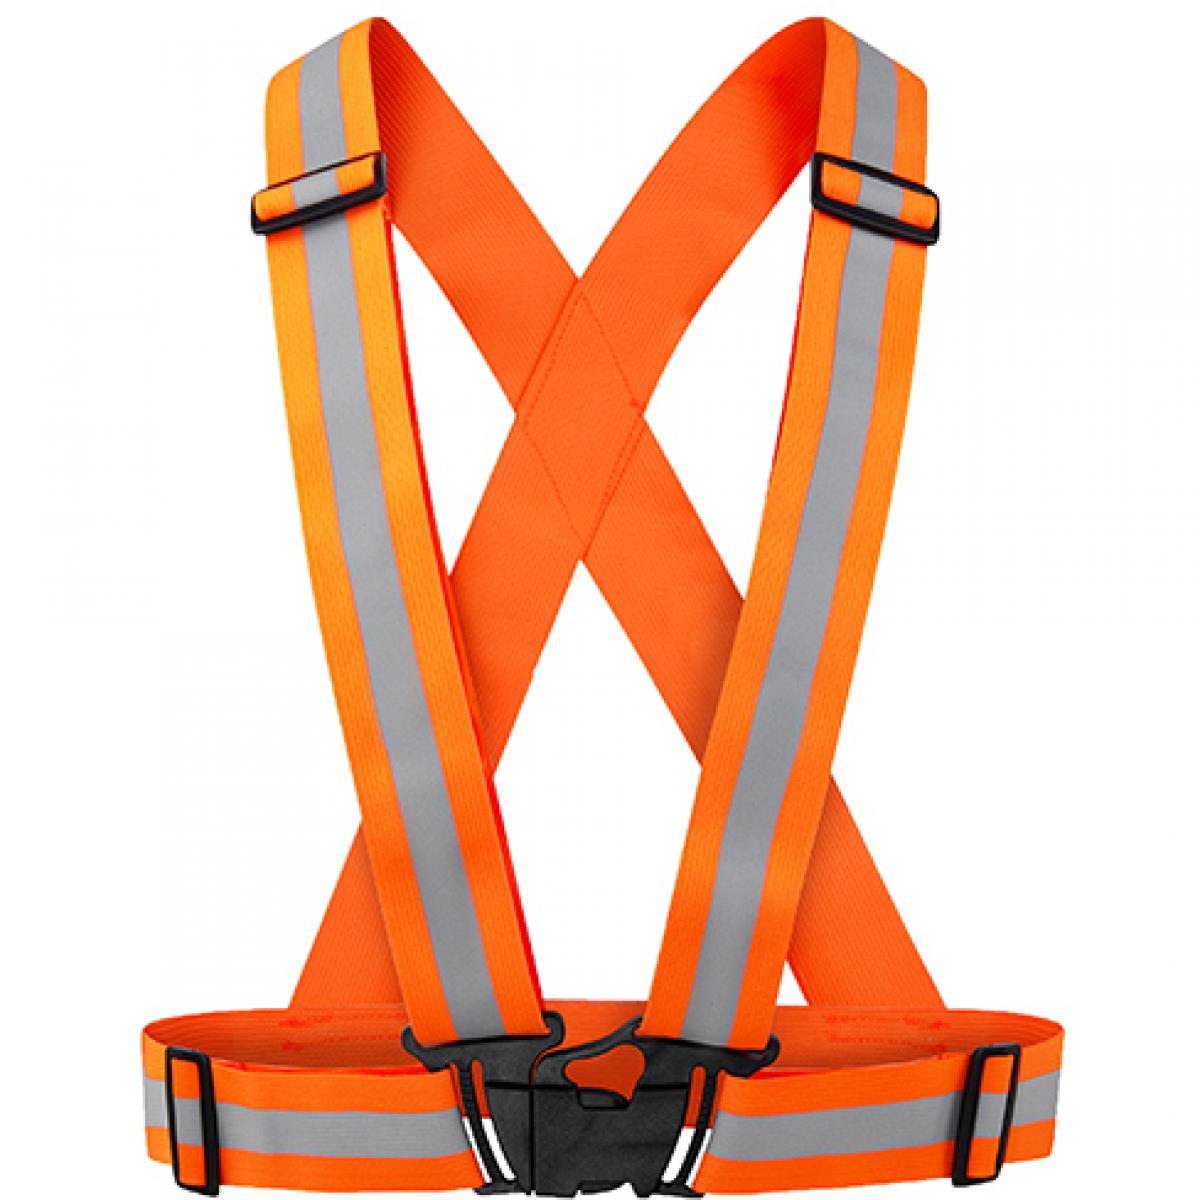 Hersteller: Korntex Herstellernummer: KXZBAND Artikelbezeichnung: Reflective Body Belt Prague Sicherheitsweste Farbe: Orange